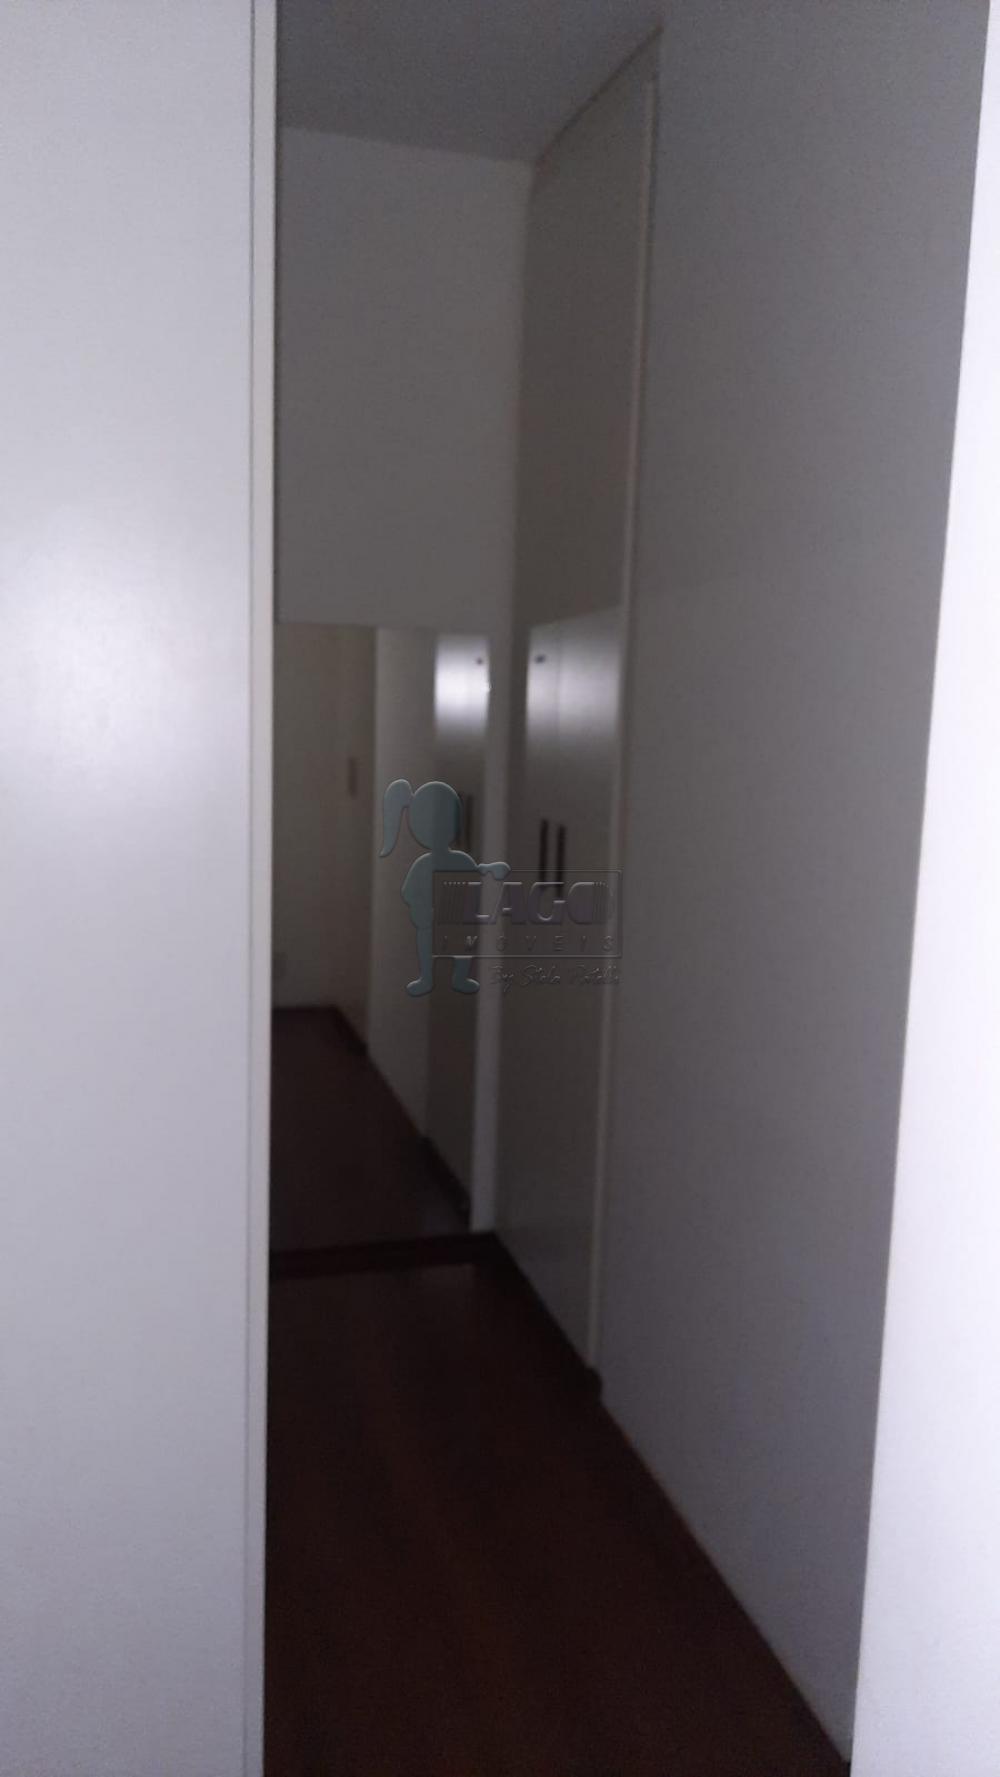 Alugar Apartamento / Padrão em Ribeirão Preto R$ 1.850,00 - Foto 12